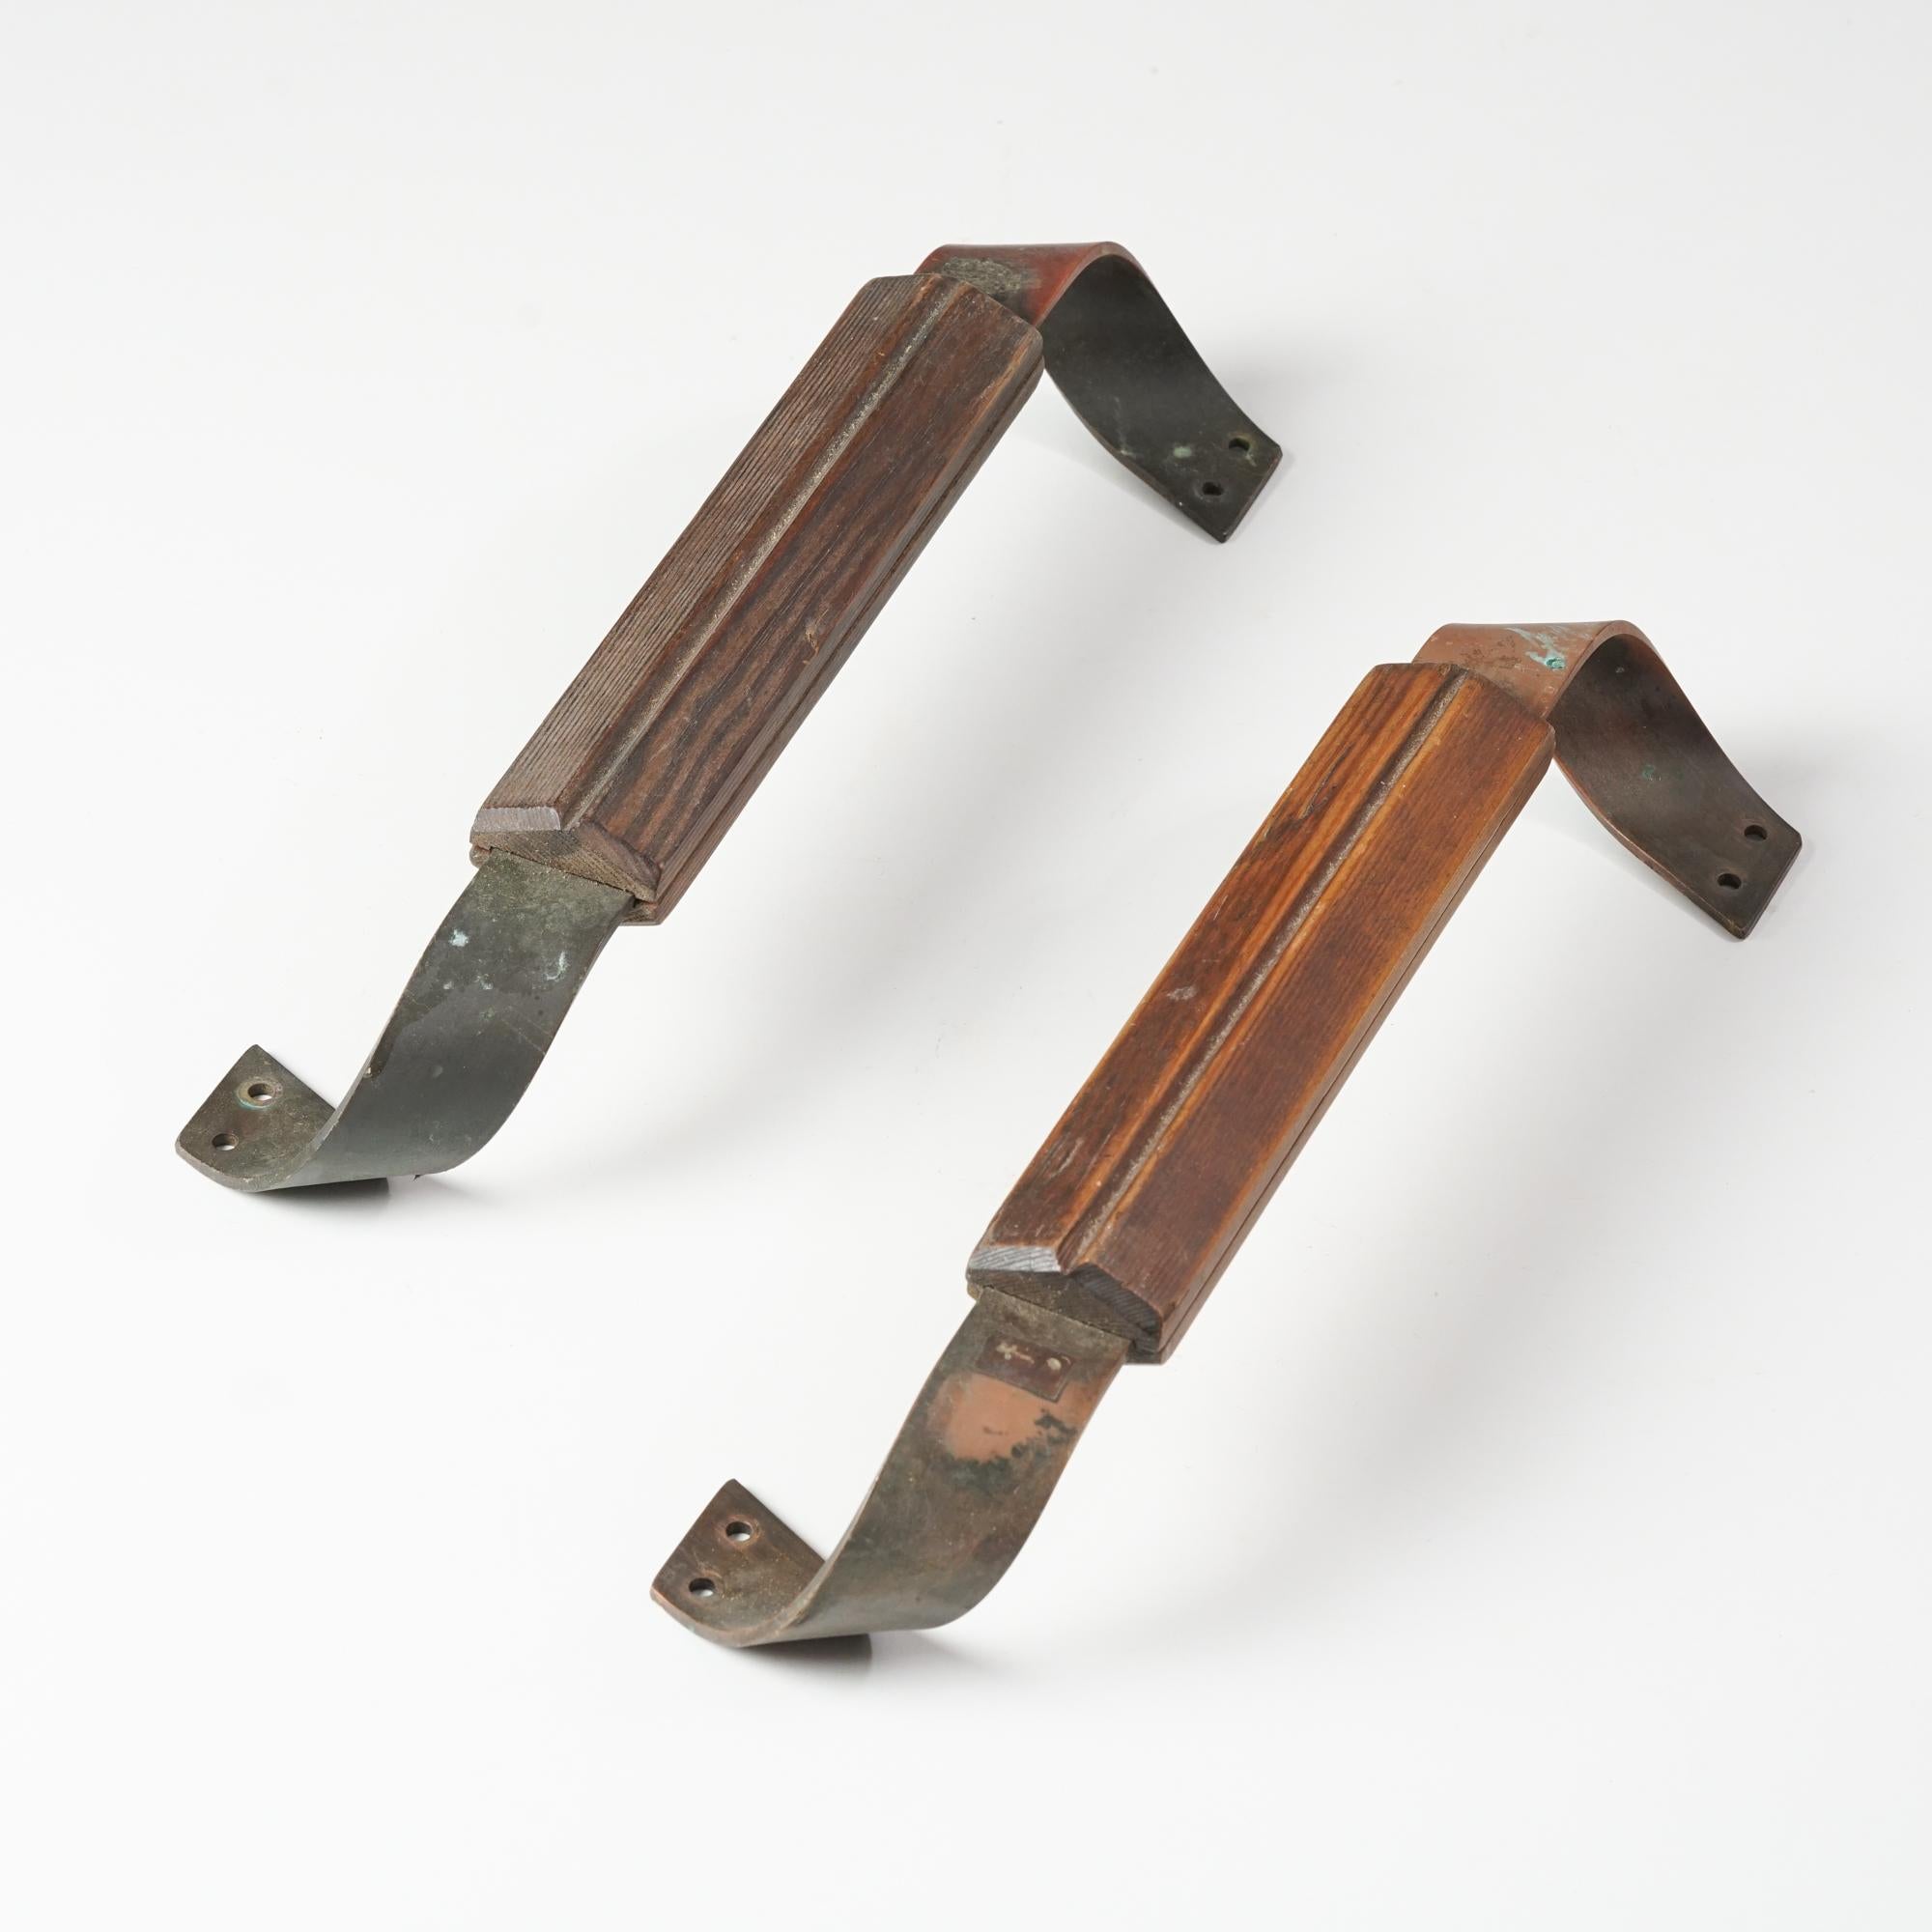 Poignées de porte finlandaises en cuivre et en pin des années 1930. Il rappelle le design d'Alvar Aalto. Bon état vintage, patine et usure correspondant à l'âge et à l'utilisation. Les poignées sont vendues en kit. 